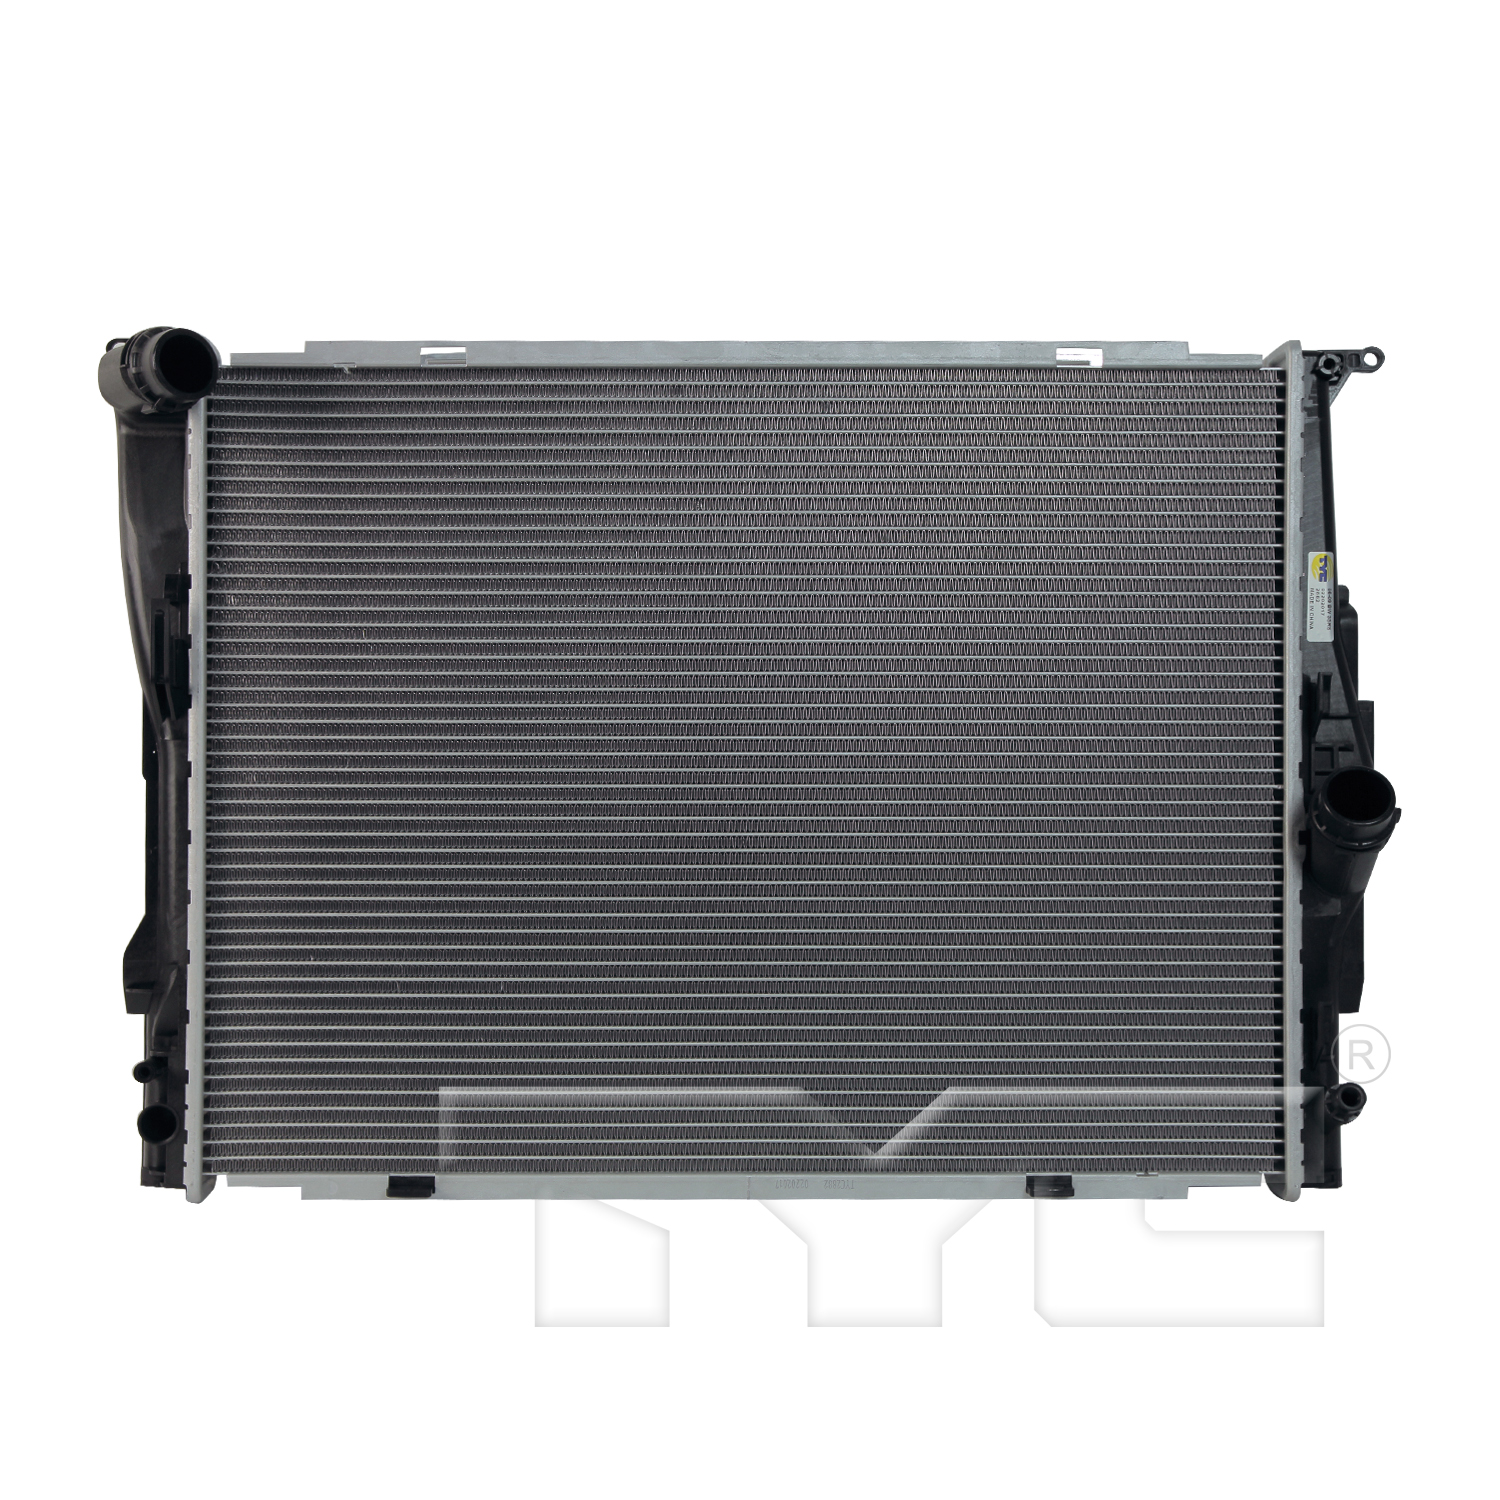 Aftermarket RADIATORS for BMW - 325I, 325i,06-06,Cooling module